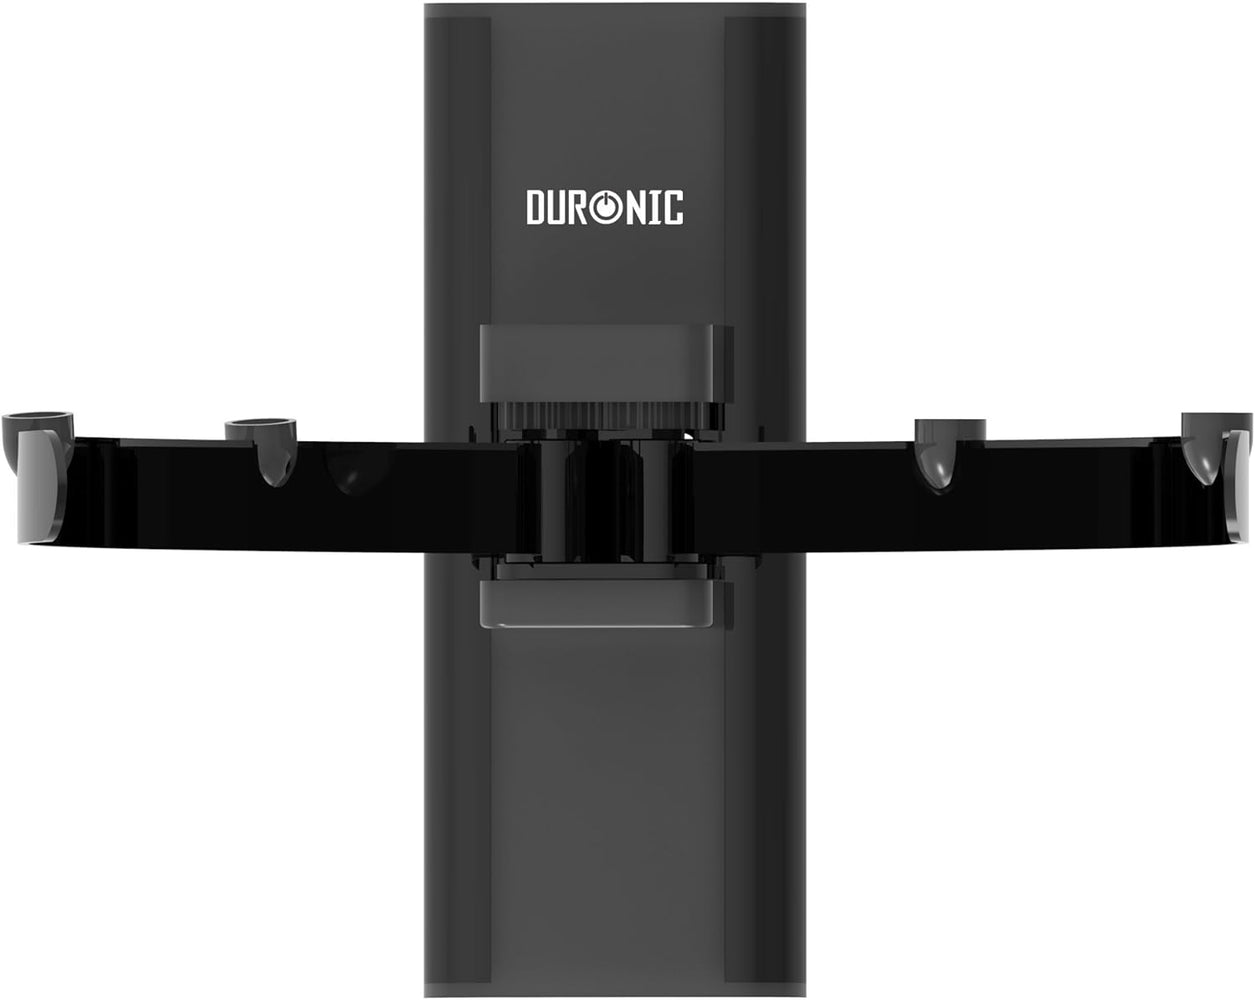 Duronic DS4044 Estante para Altavoces Hi-Fi Reproductor de DVD SkySky HD PS3 PS4 Xbox Freeview o Digibox